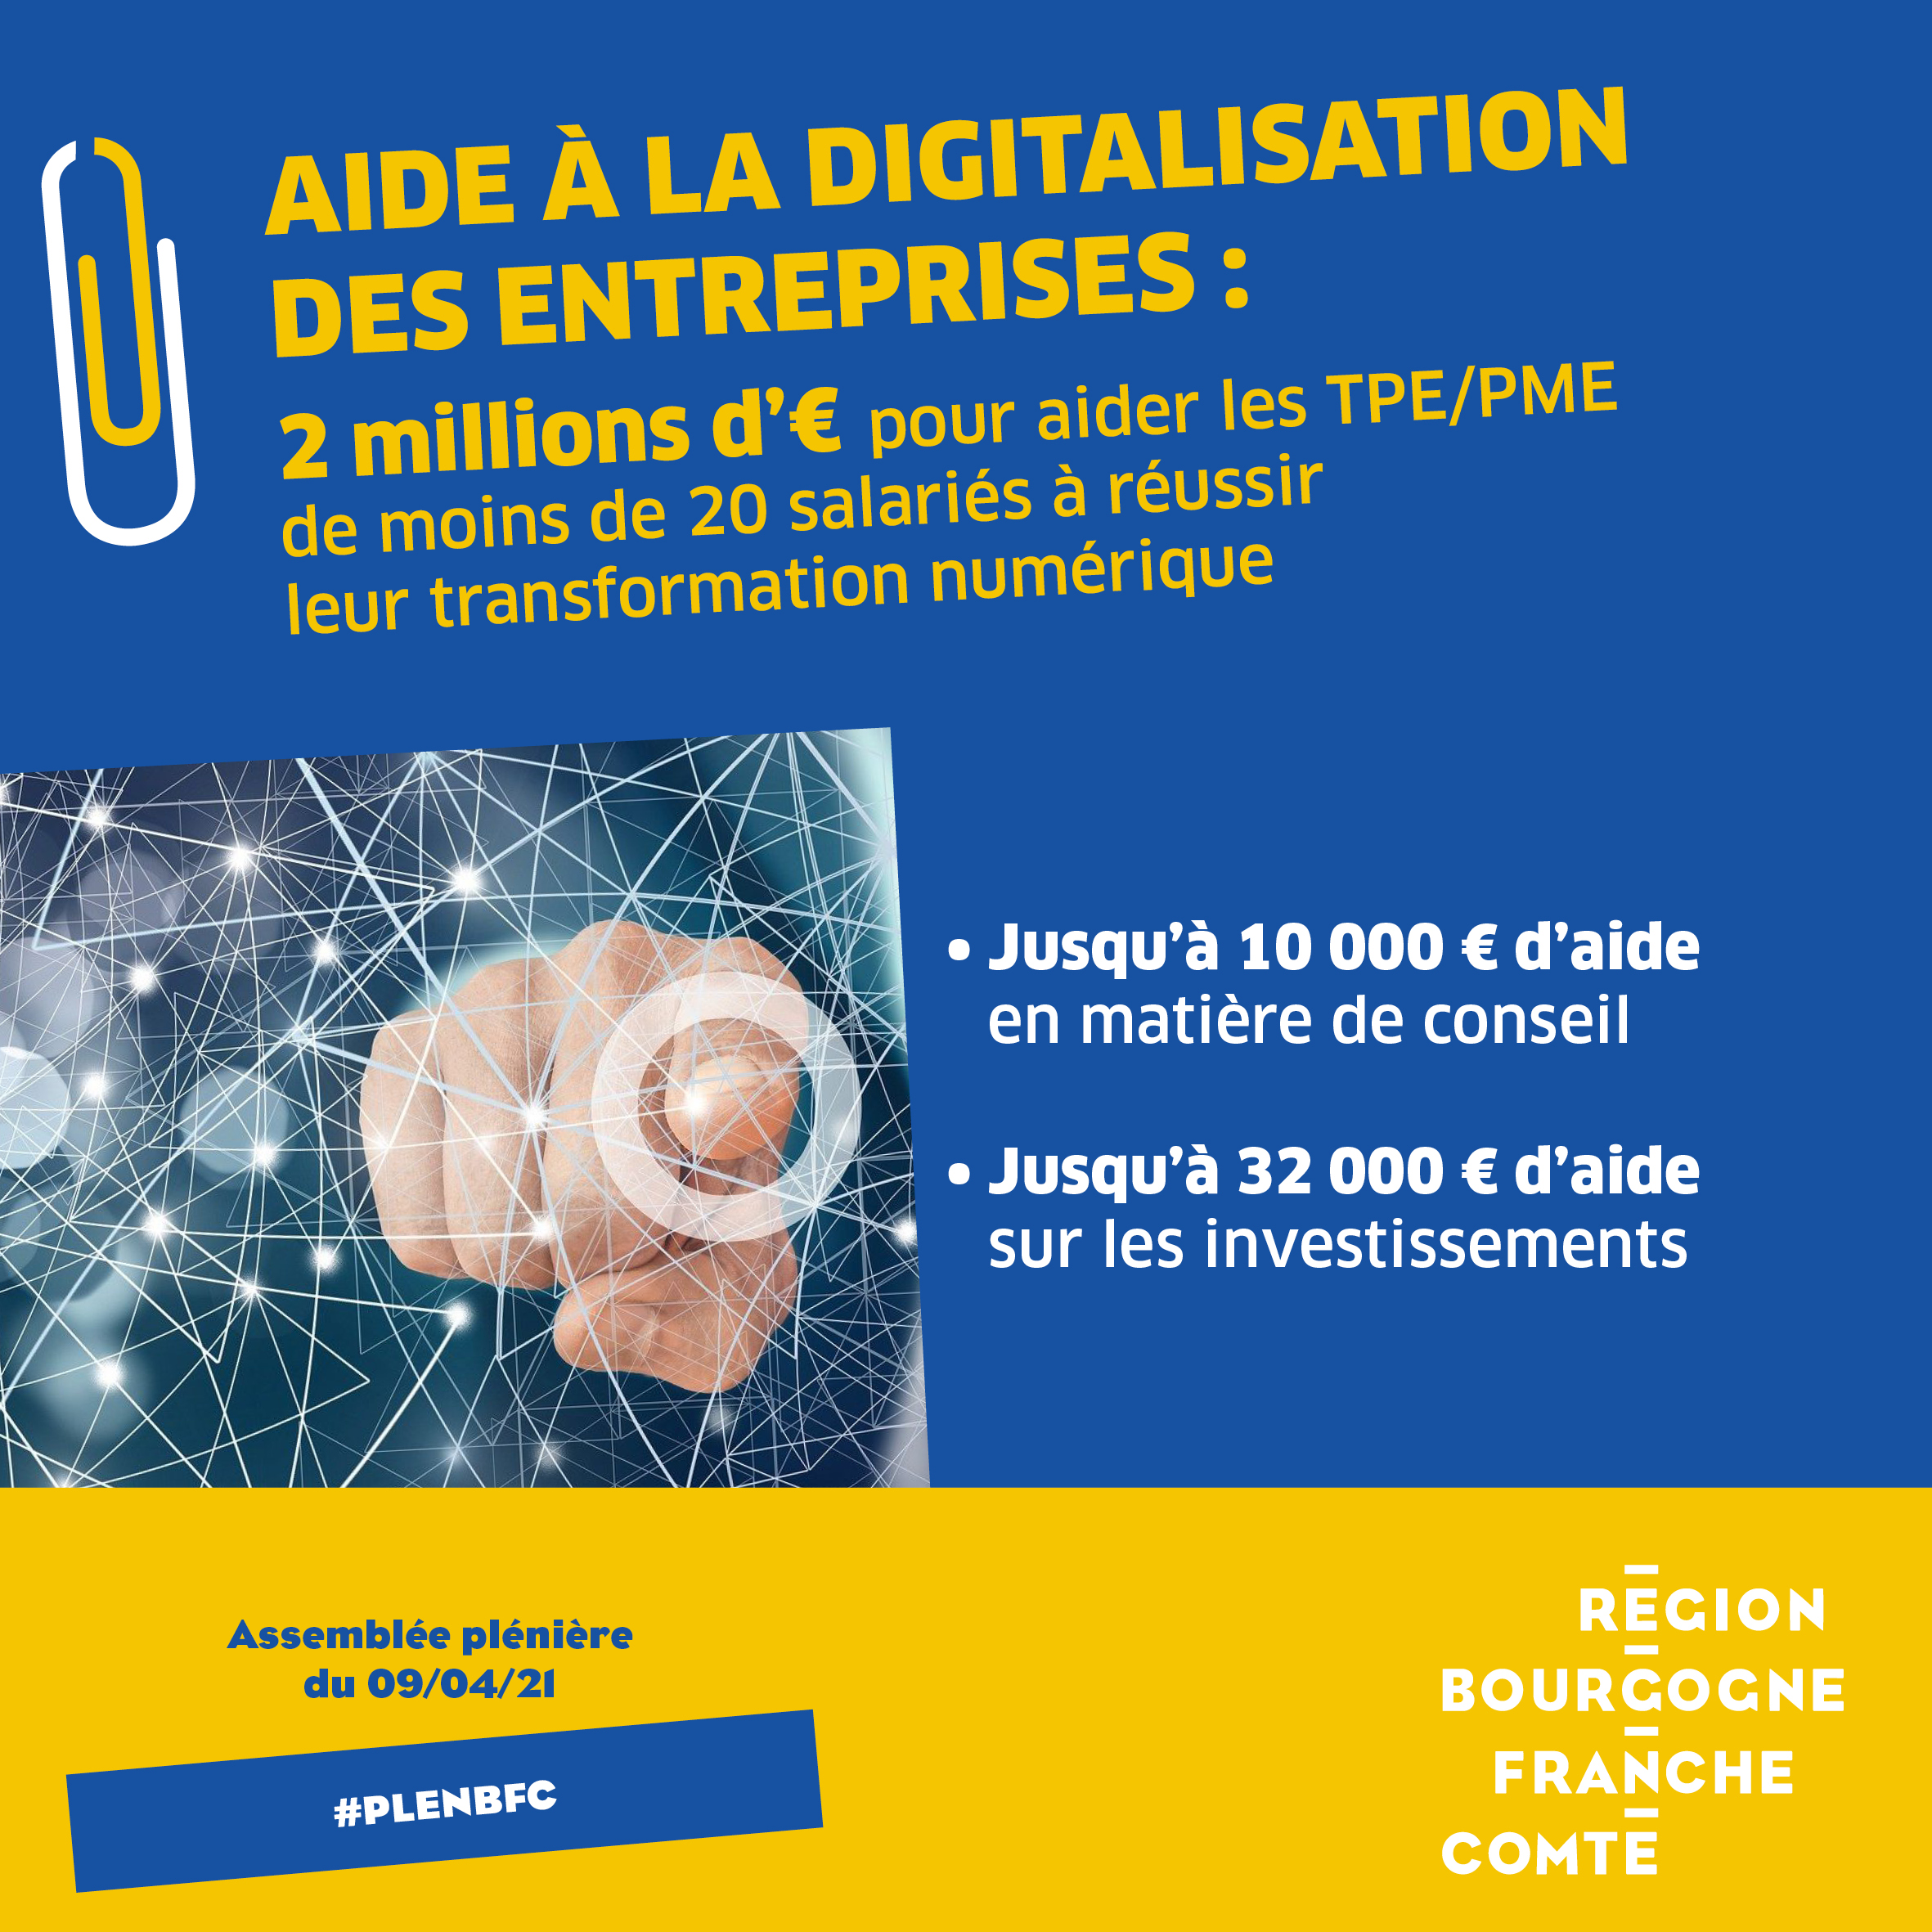 La Région Bourgogne-Franche-Comté aide à la digitalisation des entreprises - DR